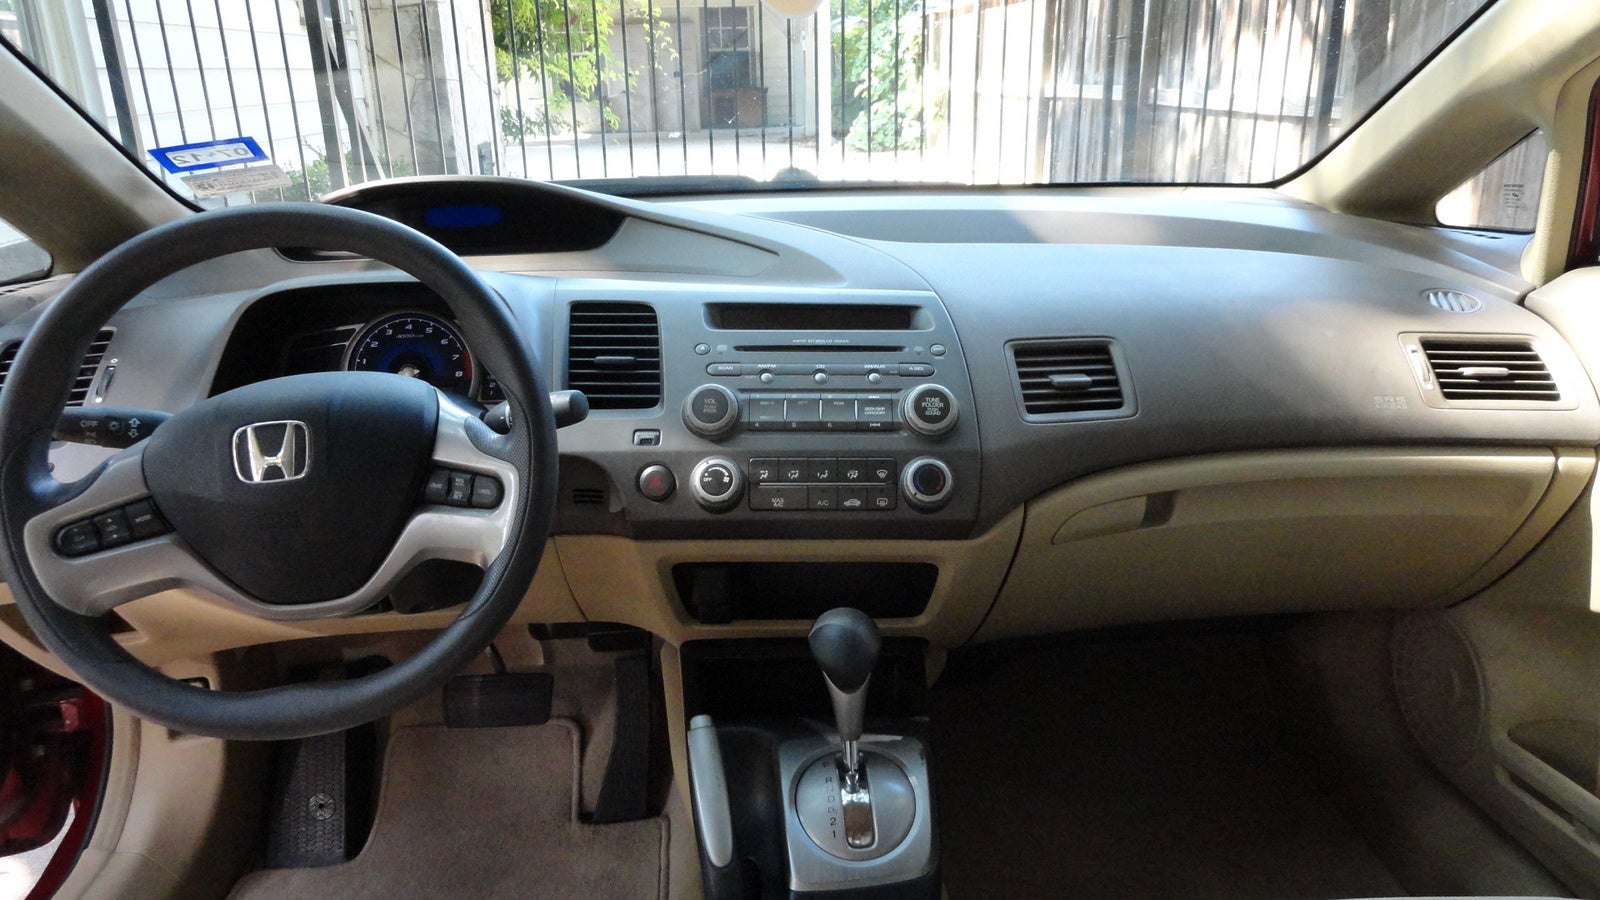 Honda Civic Ex 2006 Interior